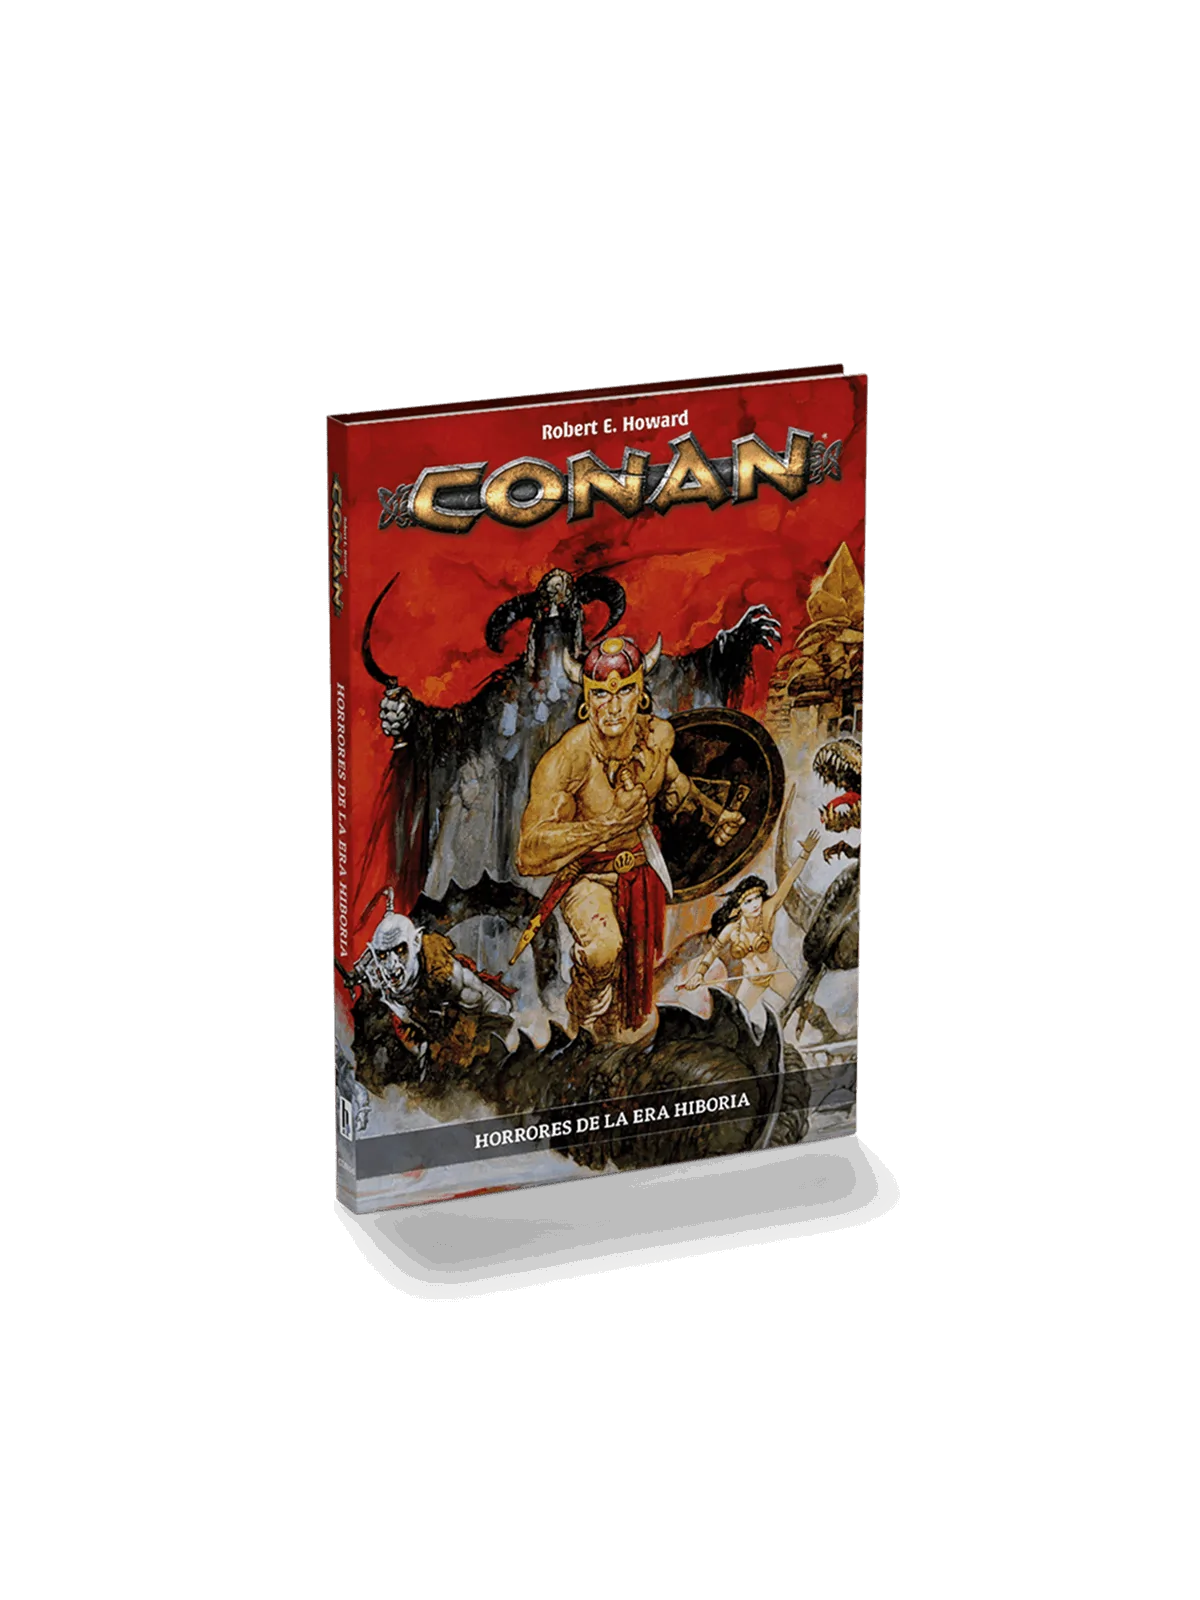 Comprar Conan: Horrores de la Era Hiboria barato al mejor precio 23,70